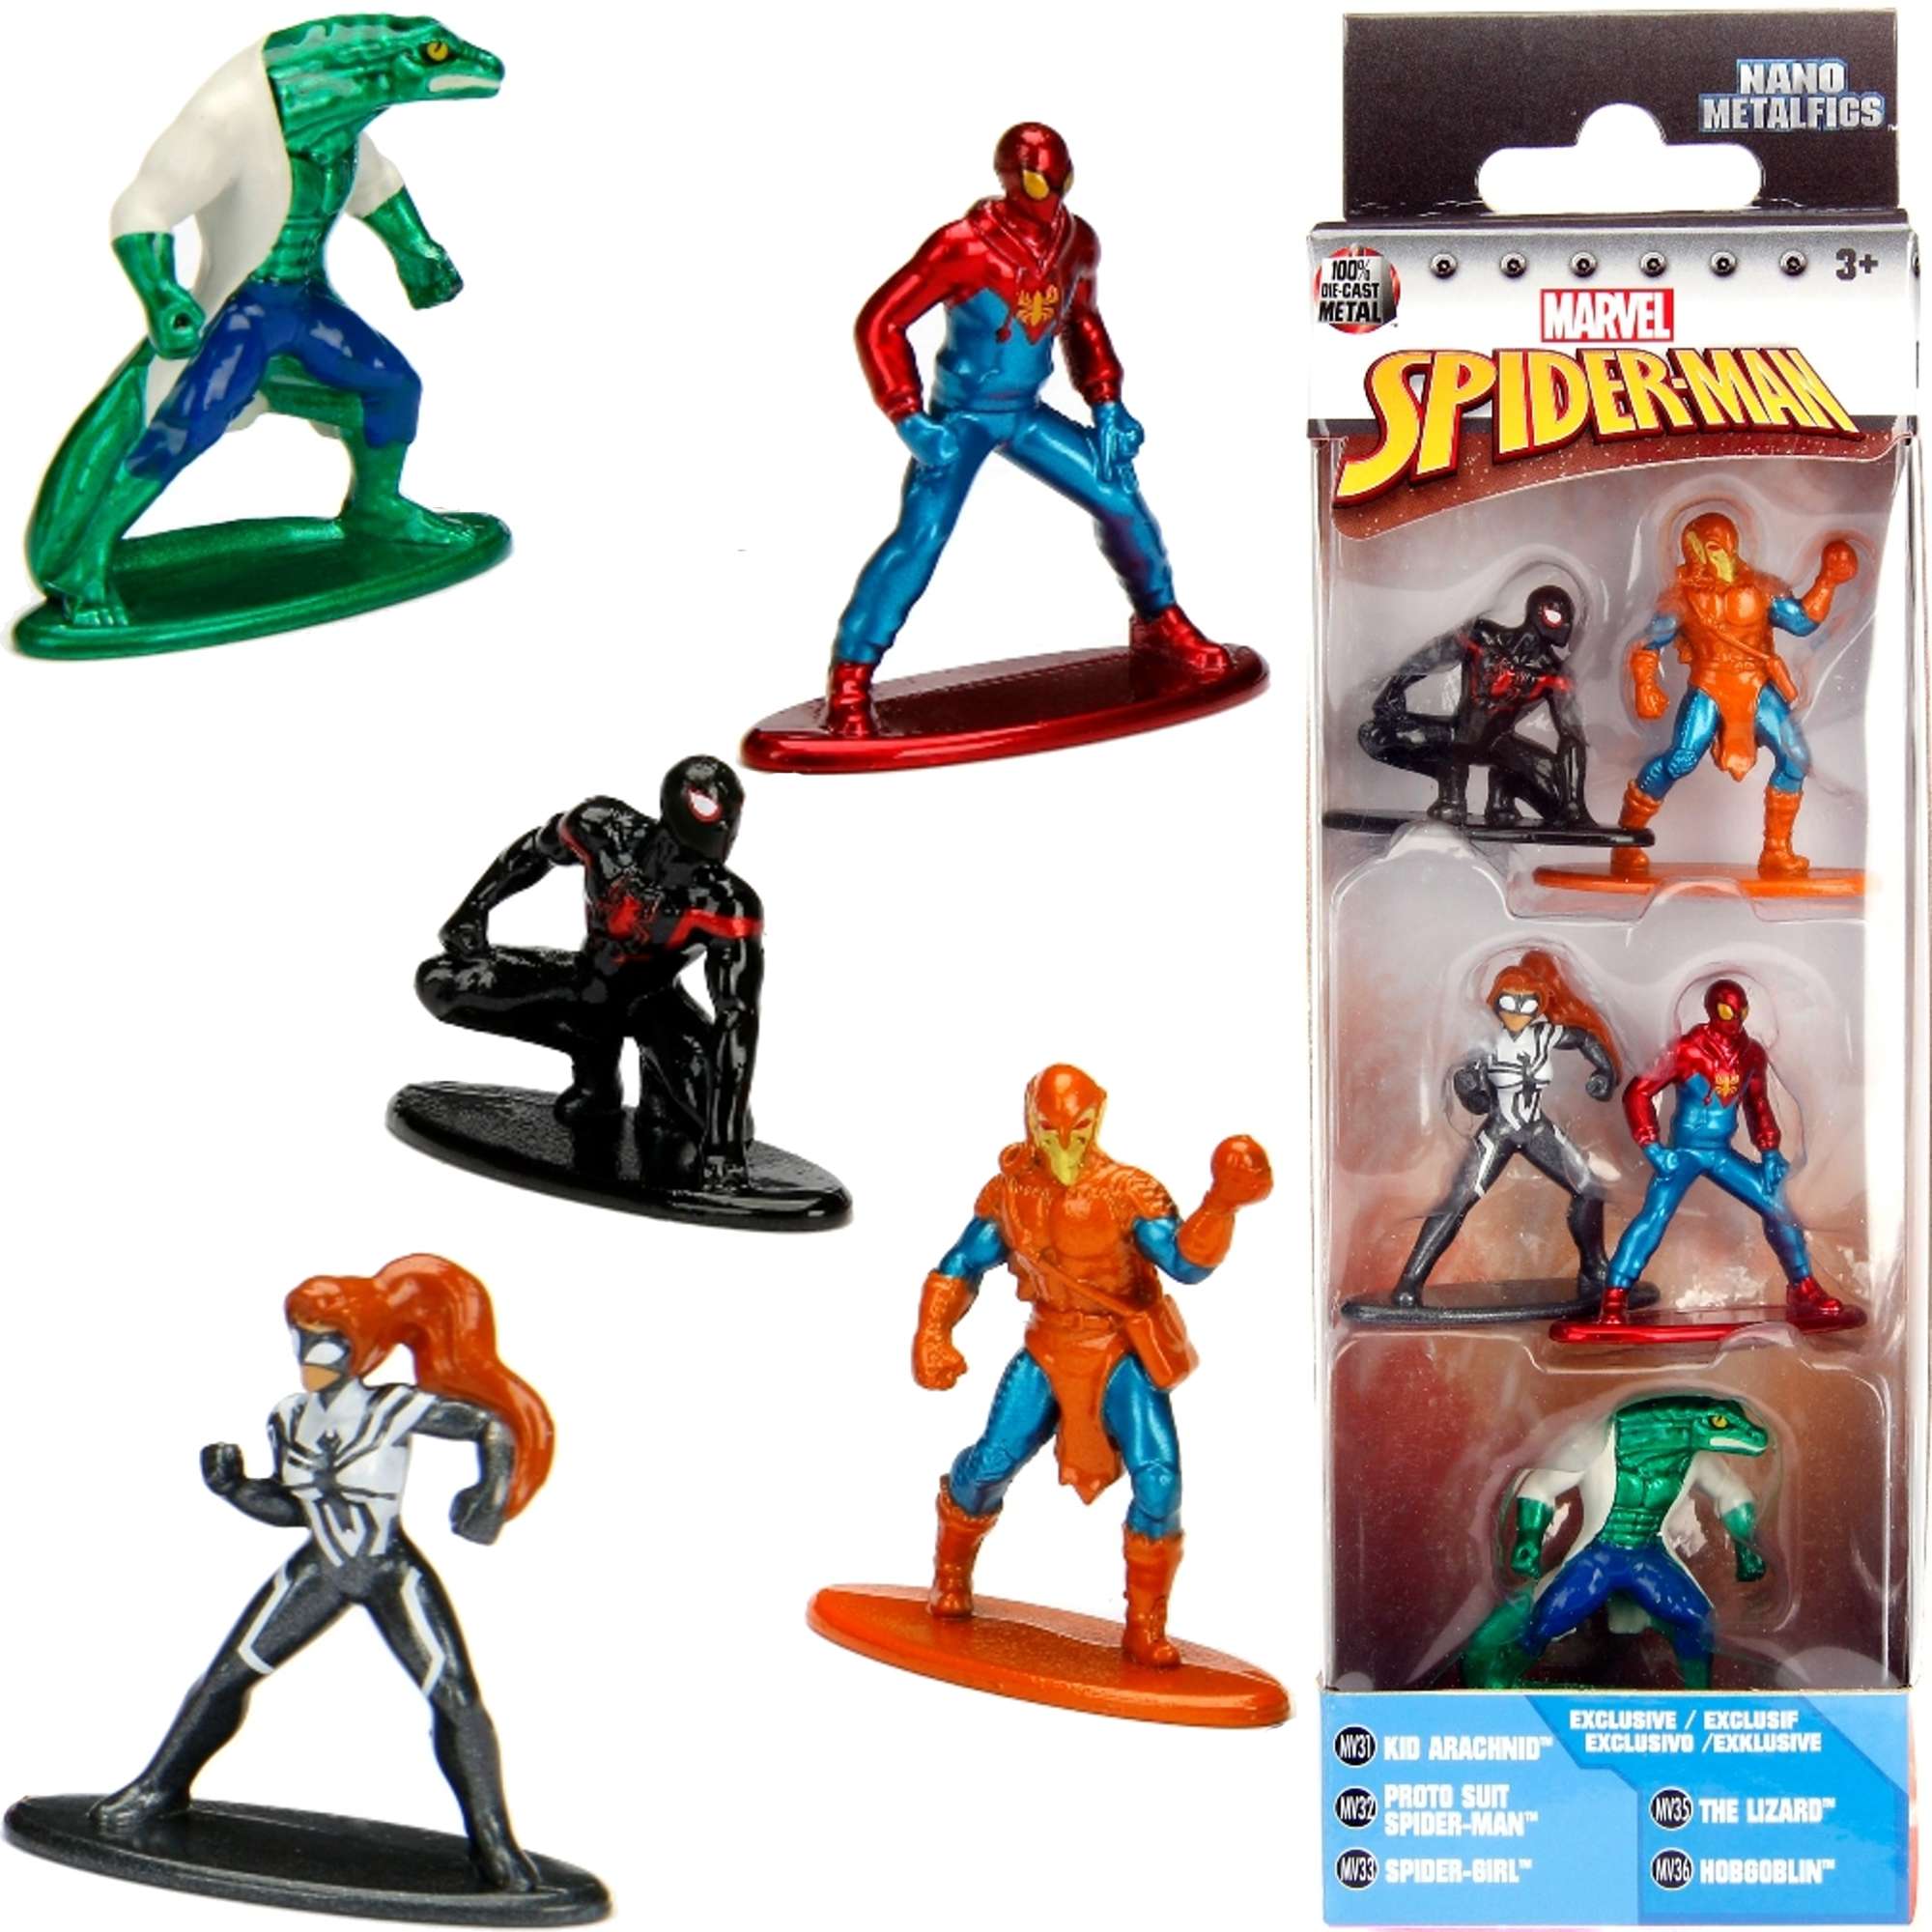 Marvel Spiderman zestaw nano metalfigs 5 metalowych figurek